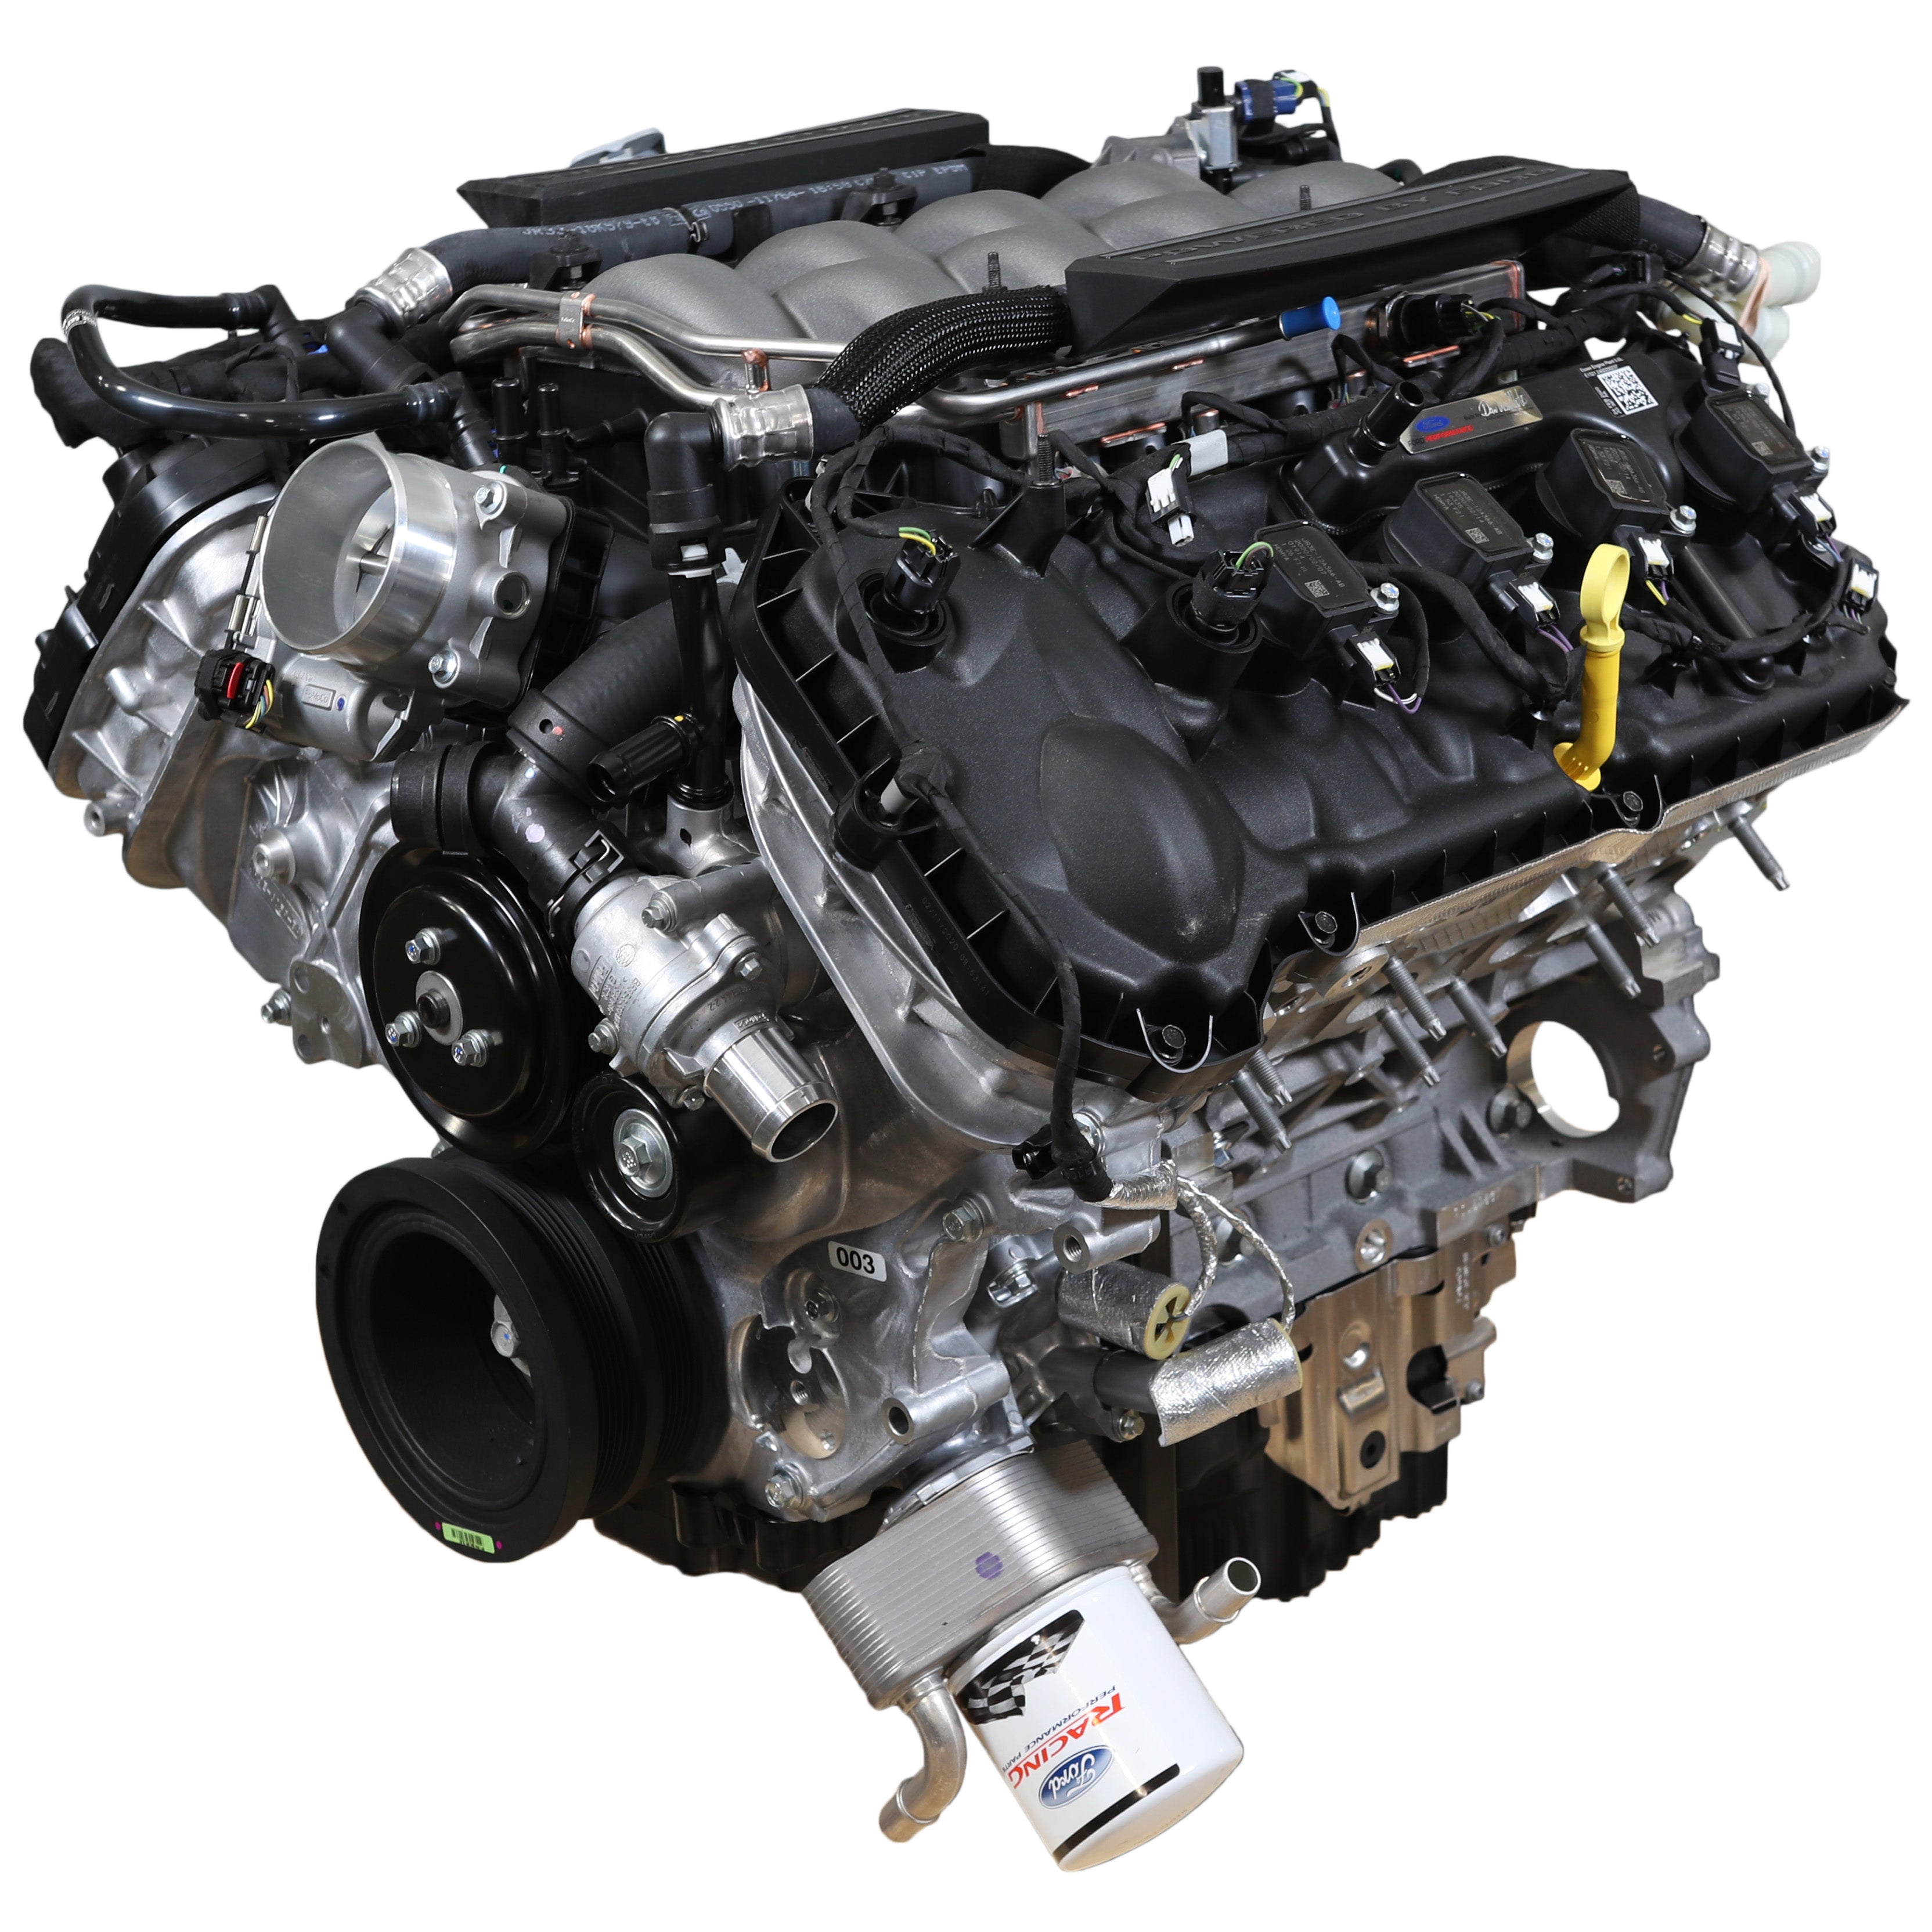 Ford Performance 5.0 literes "Aluminator" Gen 3 rekeszmotor - Alacsony kompresszió az FI-beépítésekhez